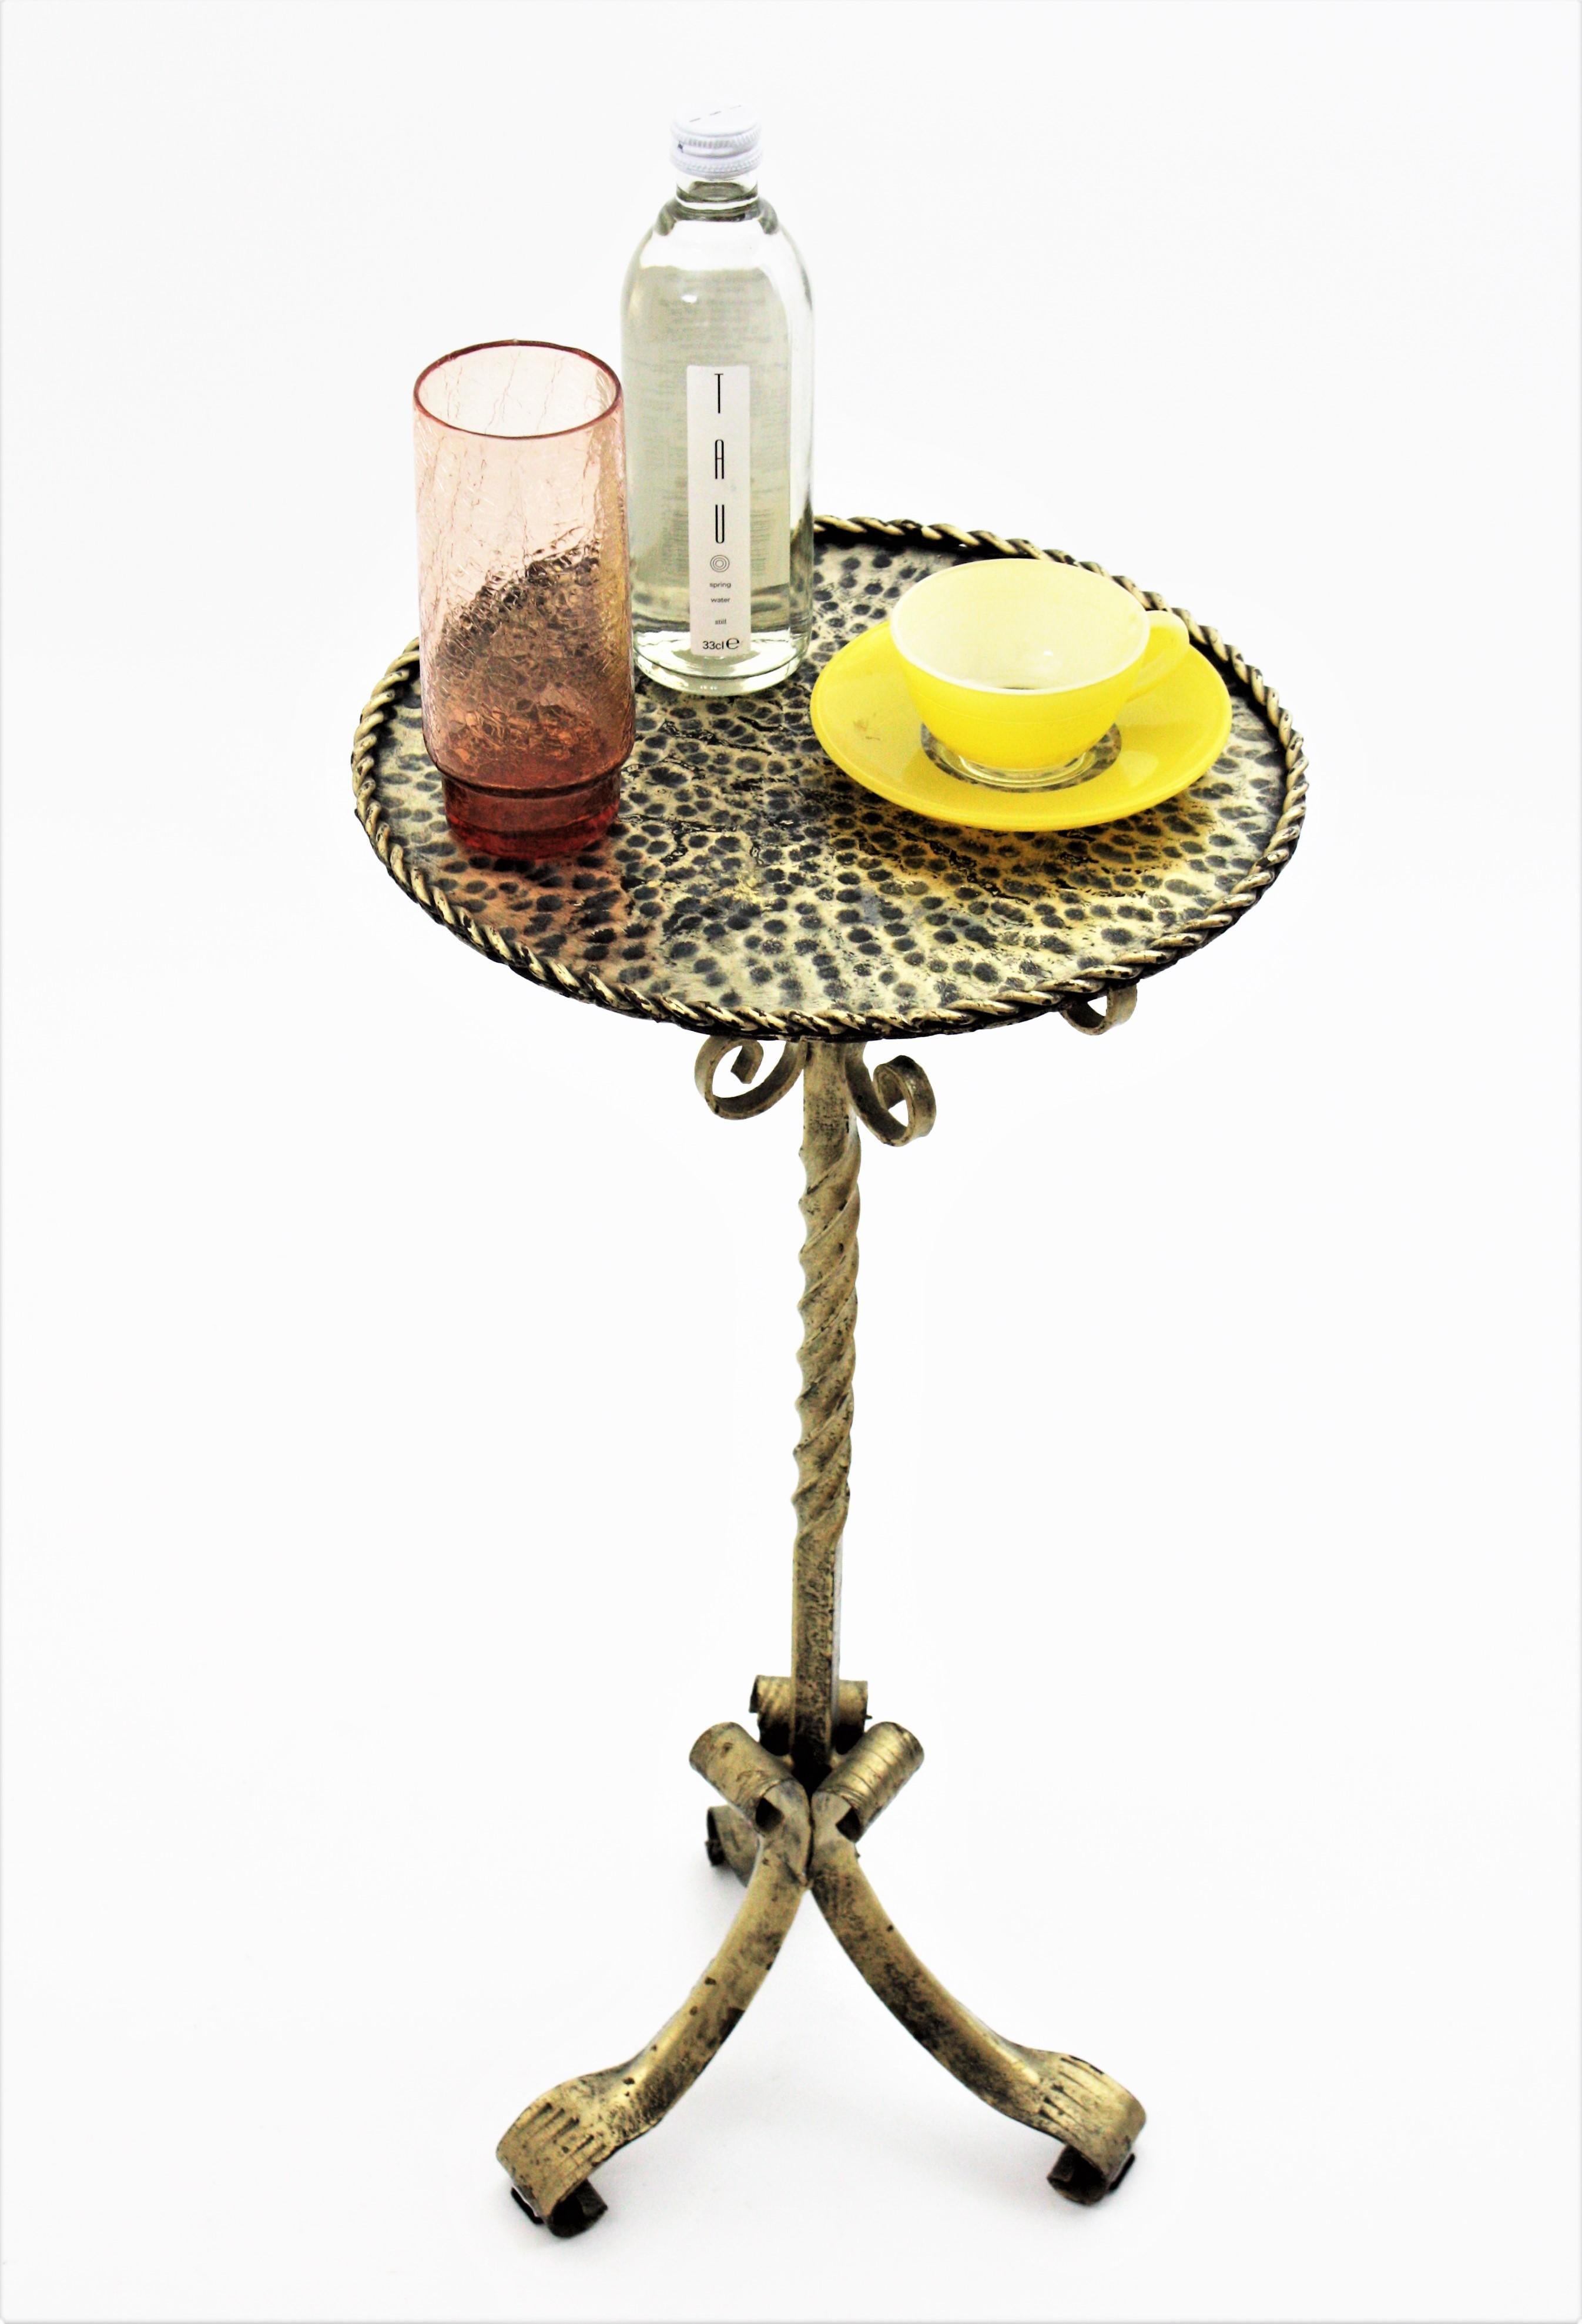 Spanische Silber vergoldet Eisen Drinks Tisch Gueridon, End-Tabelle oder Sockel stehen auf Dreibein Basis. Spanien, 1960er Jahre.

Ein spanischer schmiedeeiserner, vergoldeter und patinierter Martini-Tisch, Ständer oder Getränketisch. 
Dieser